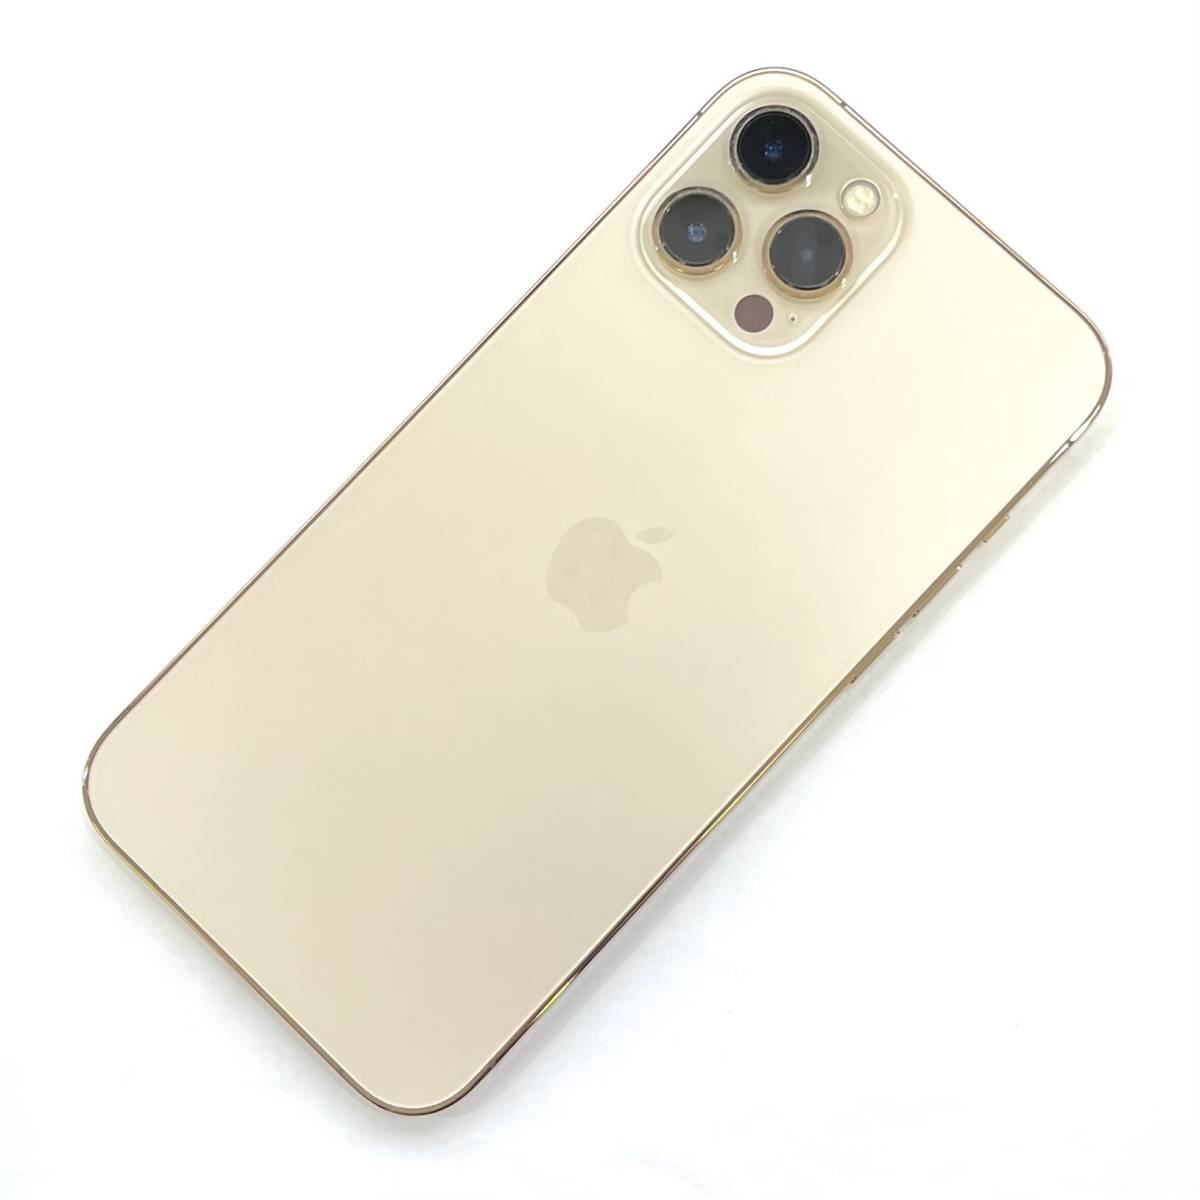 国内版SIMフリー iPhone 12 Pro Max 256GB ゴールド MGD13J/A iOS Ver15.5 バッテリー最大容量91%